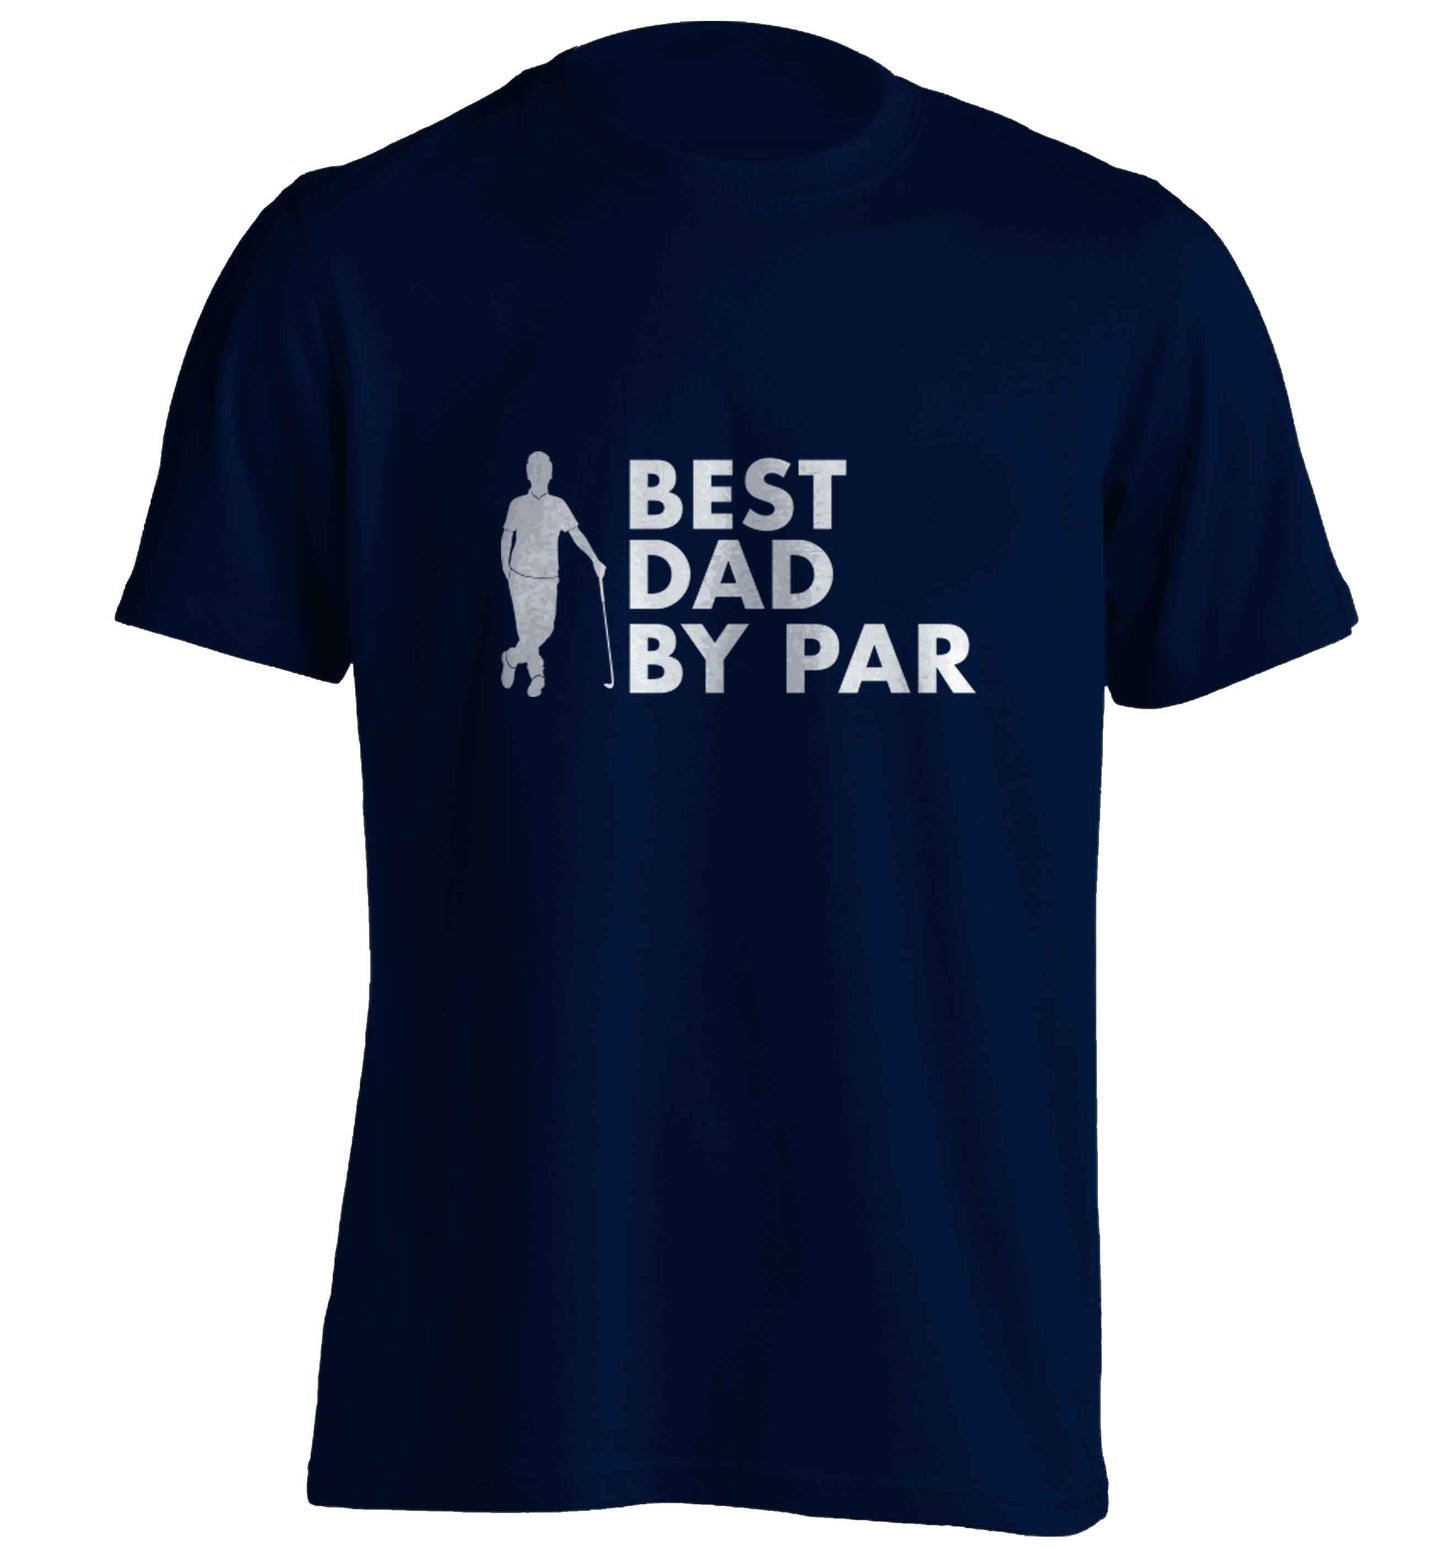 Best dad by par adults unisex navy Tshirt 2XL